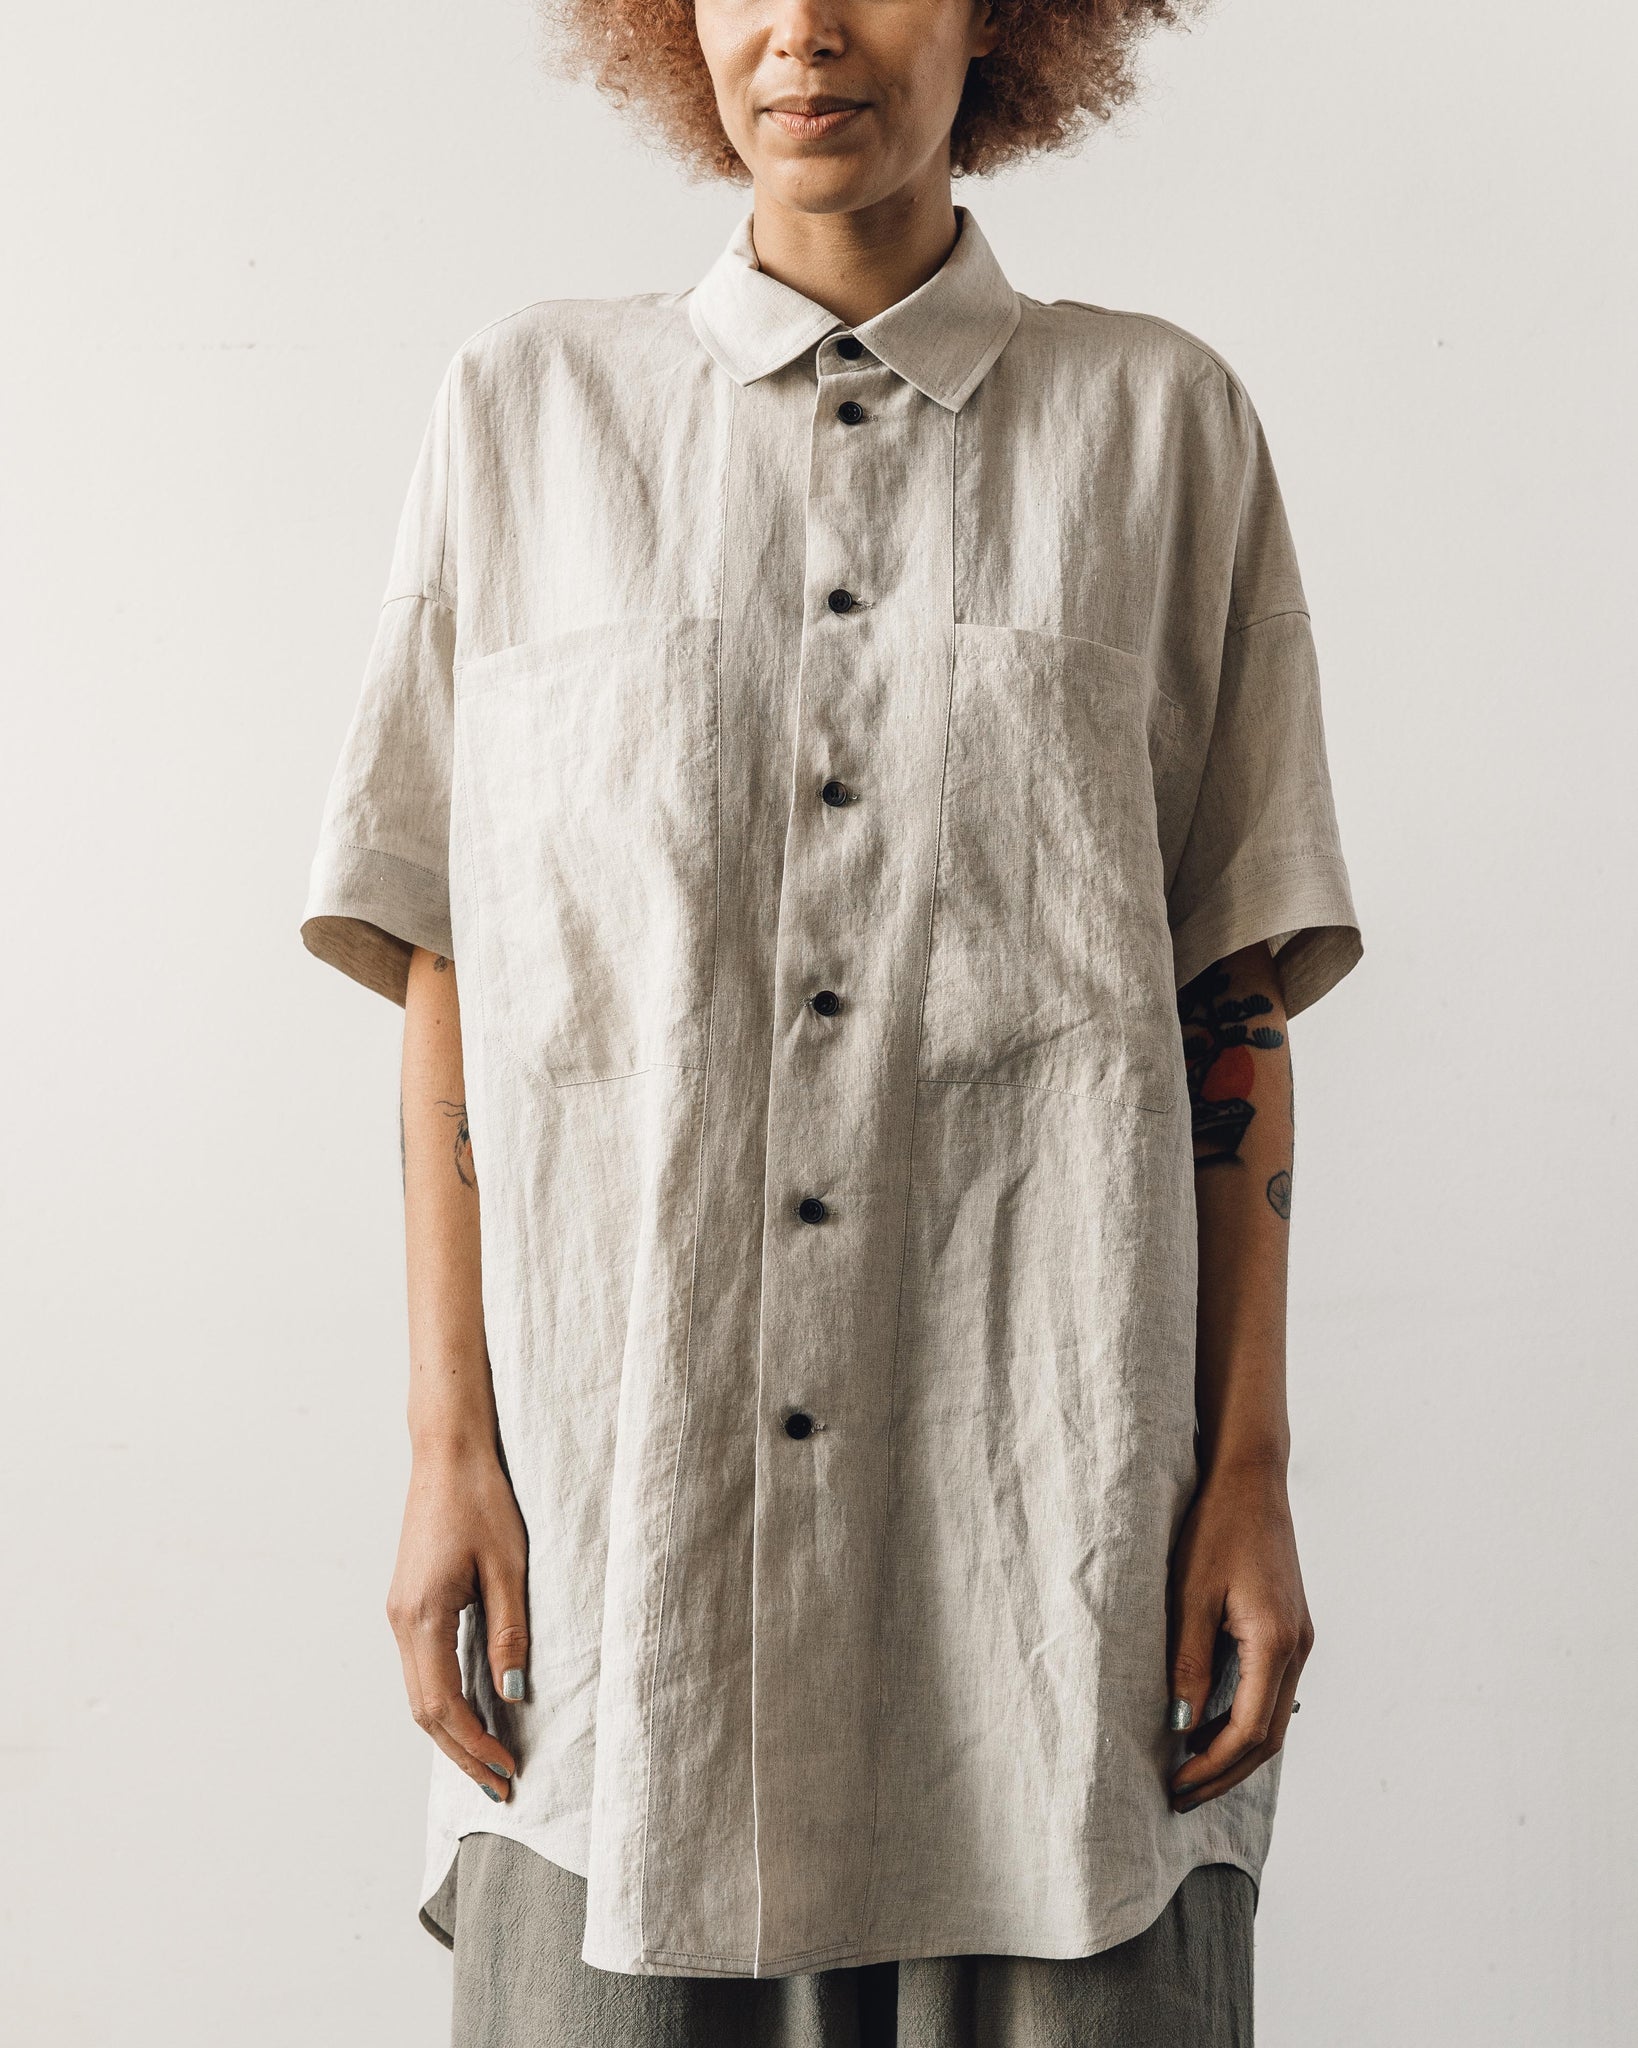 Jan-Jan Van Essche Shirt #84, Natural Mele Linen